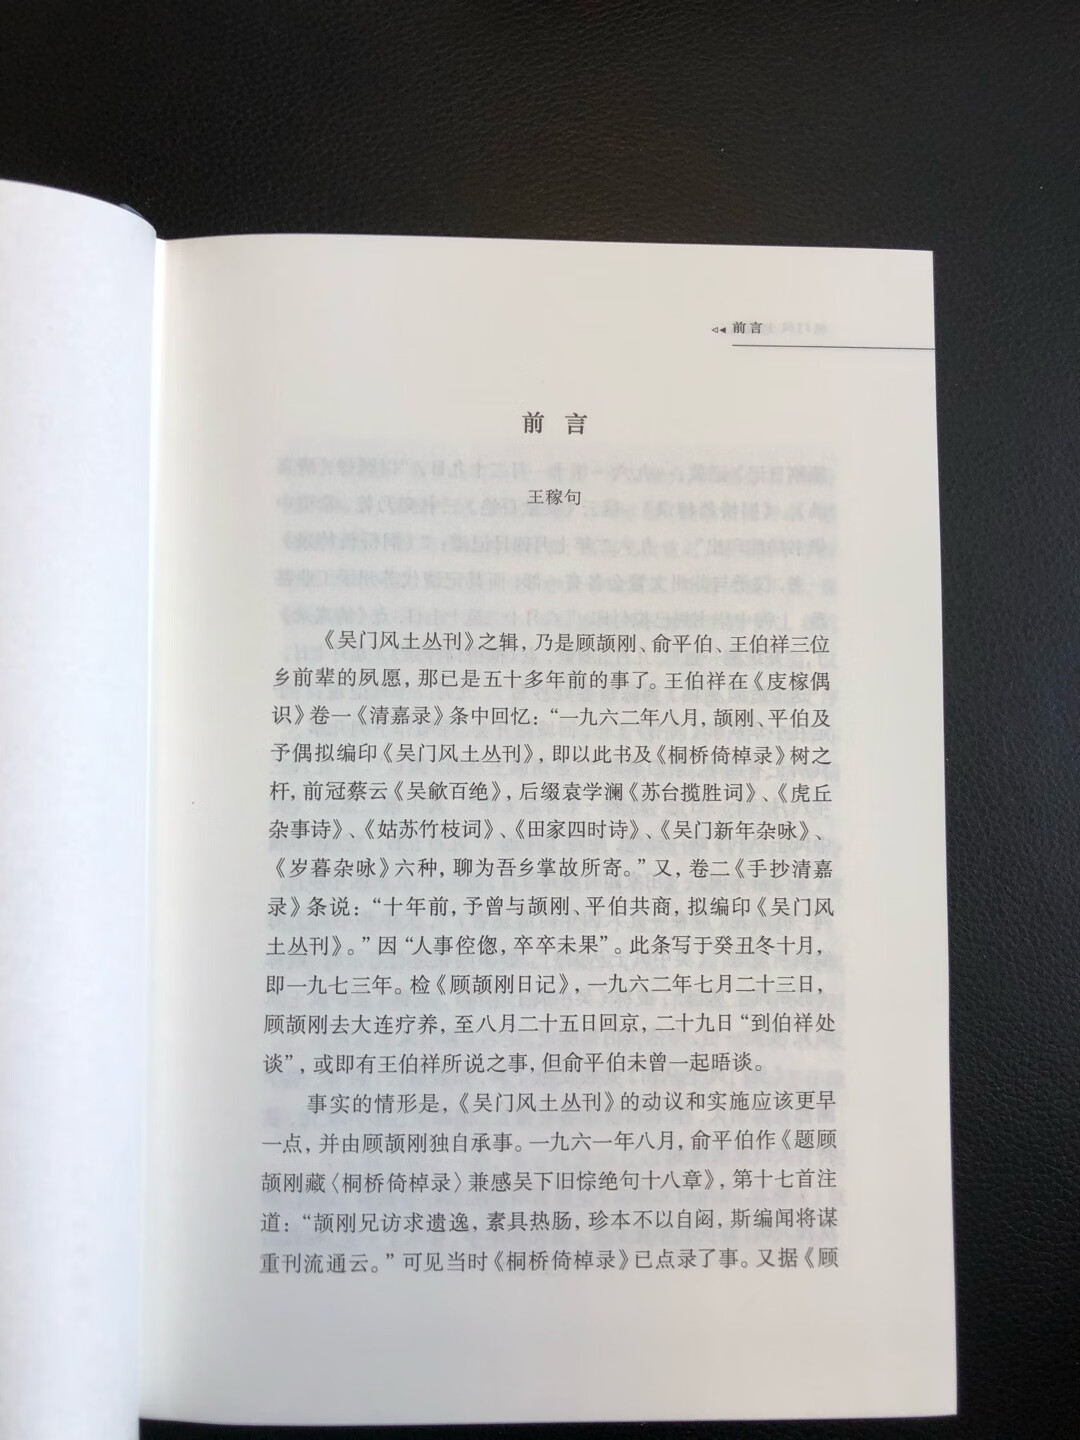 紫金文库系列之一，中国书籍出版社出品，精装，印刷质量不错，折扣较好。